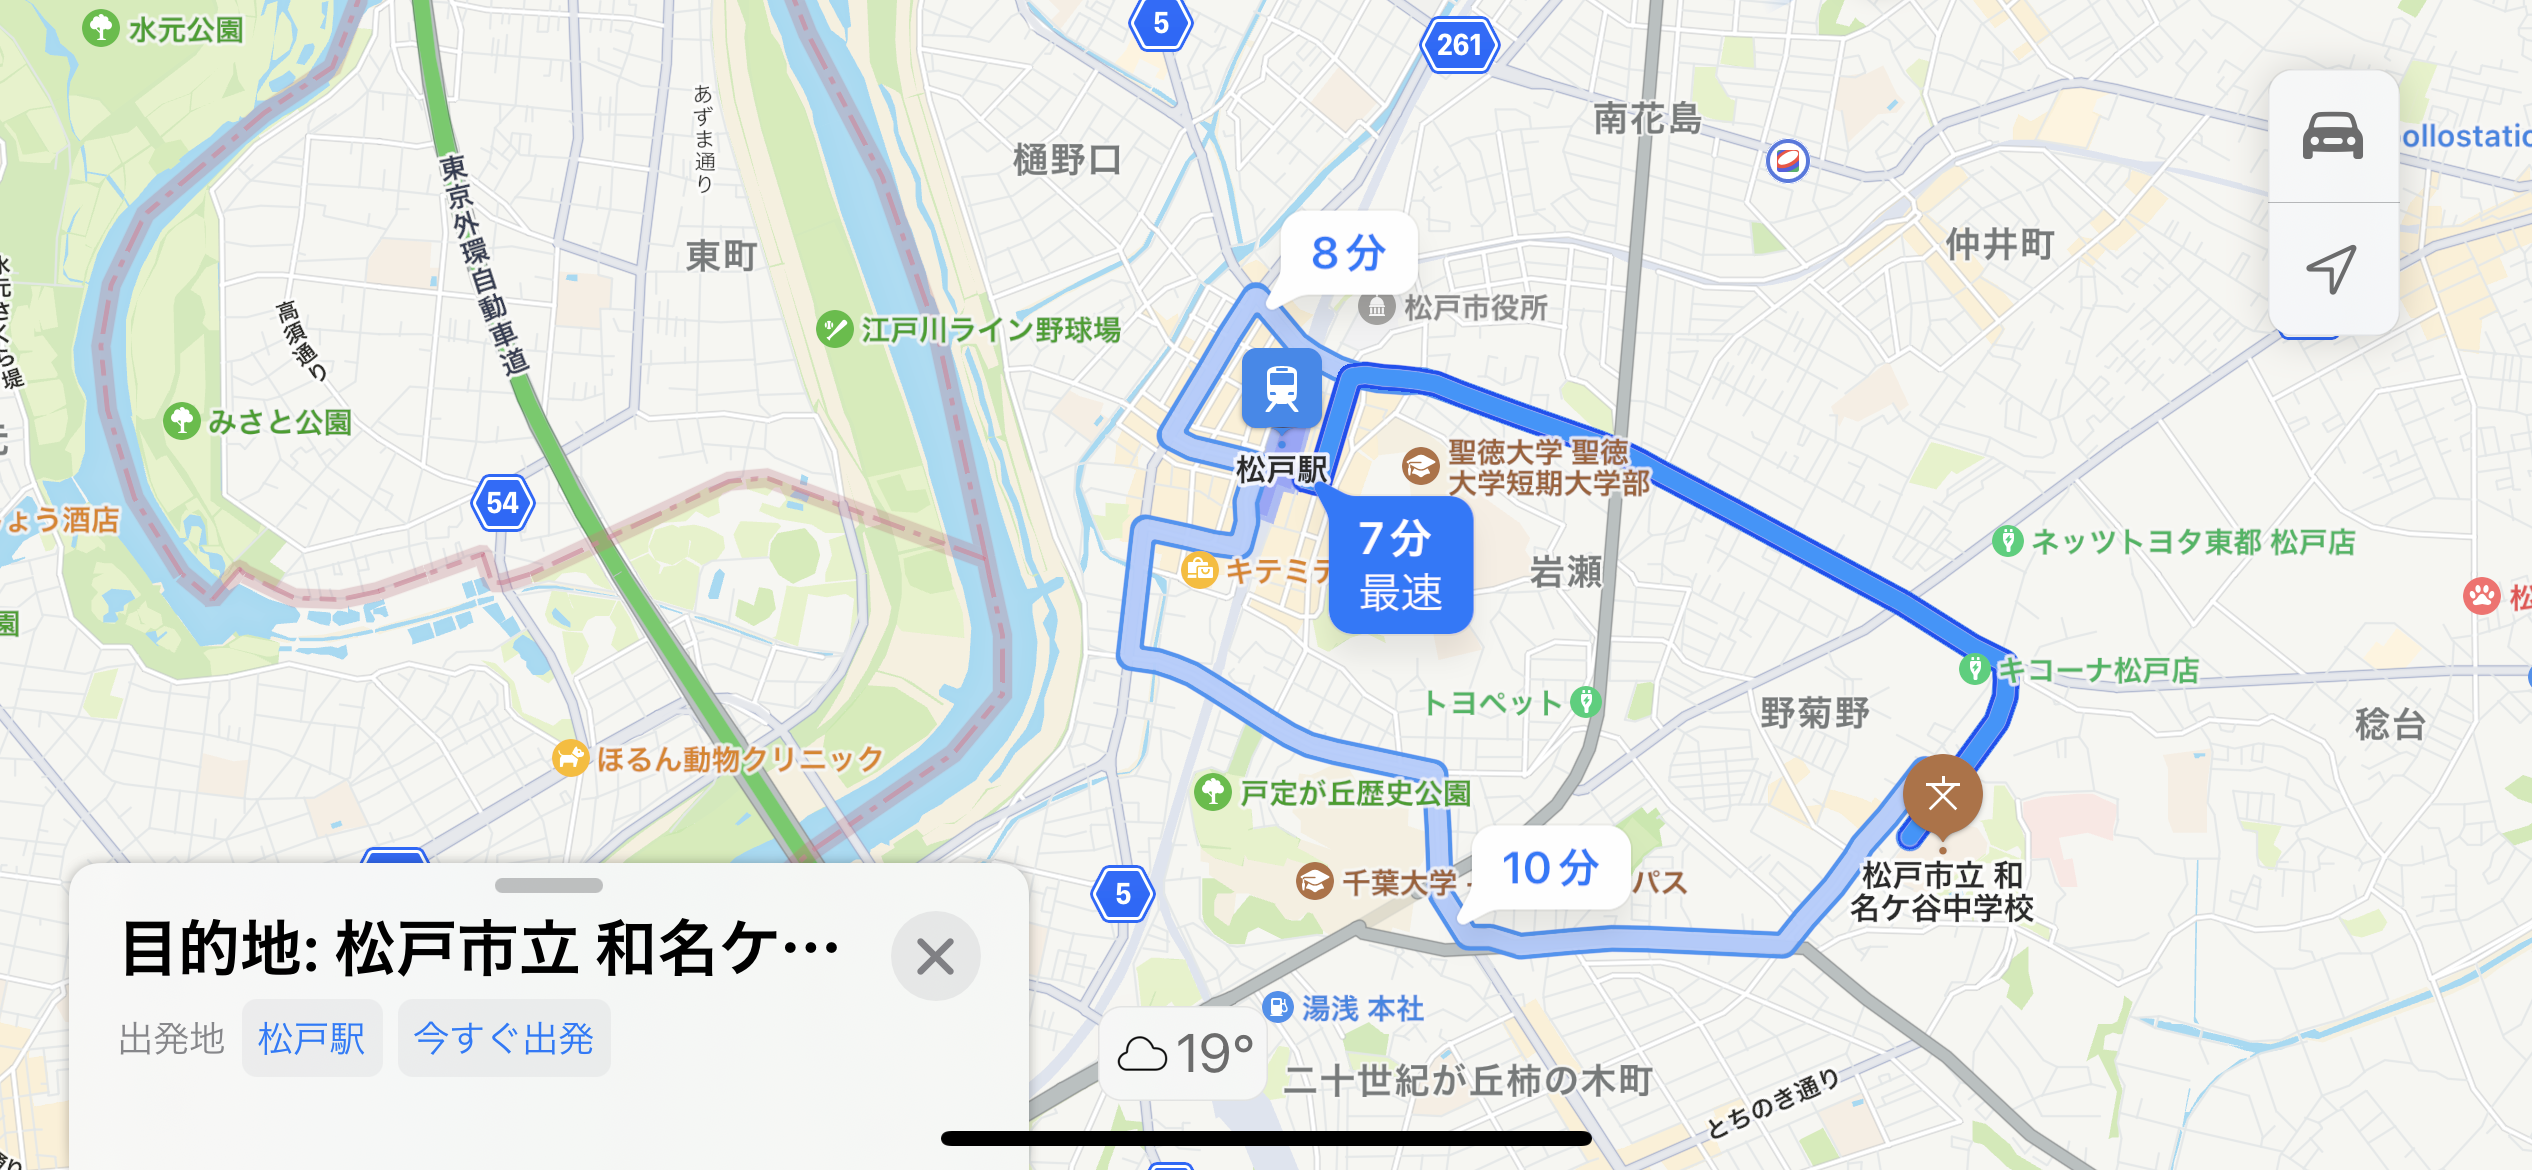 松戸駅から松戸市立和名ヶ谷中学校経路